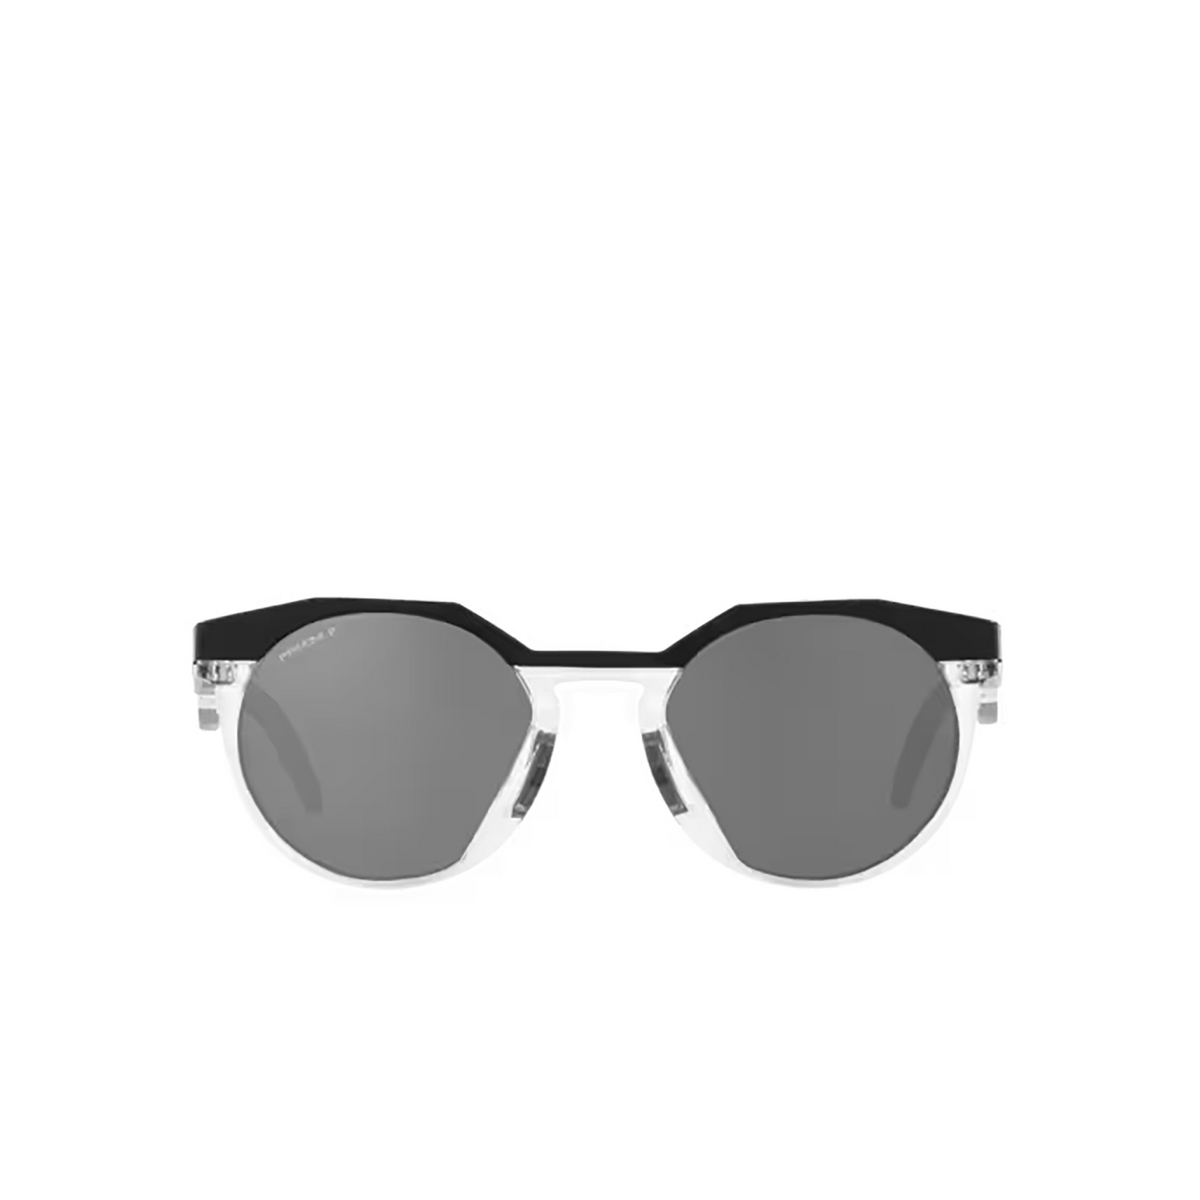 Oakley HSTN Sunglasses 924205 Matte Black - front view